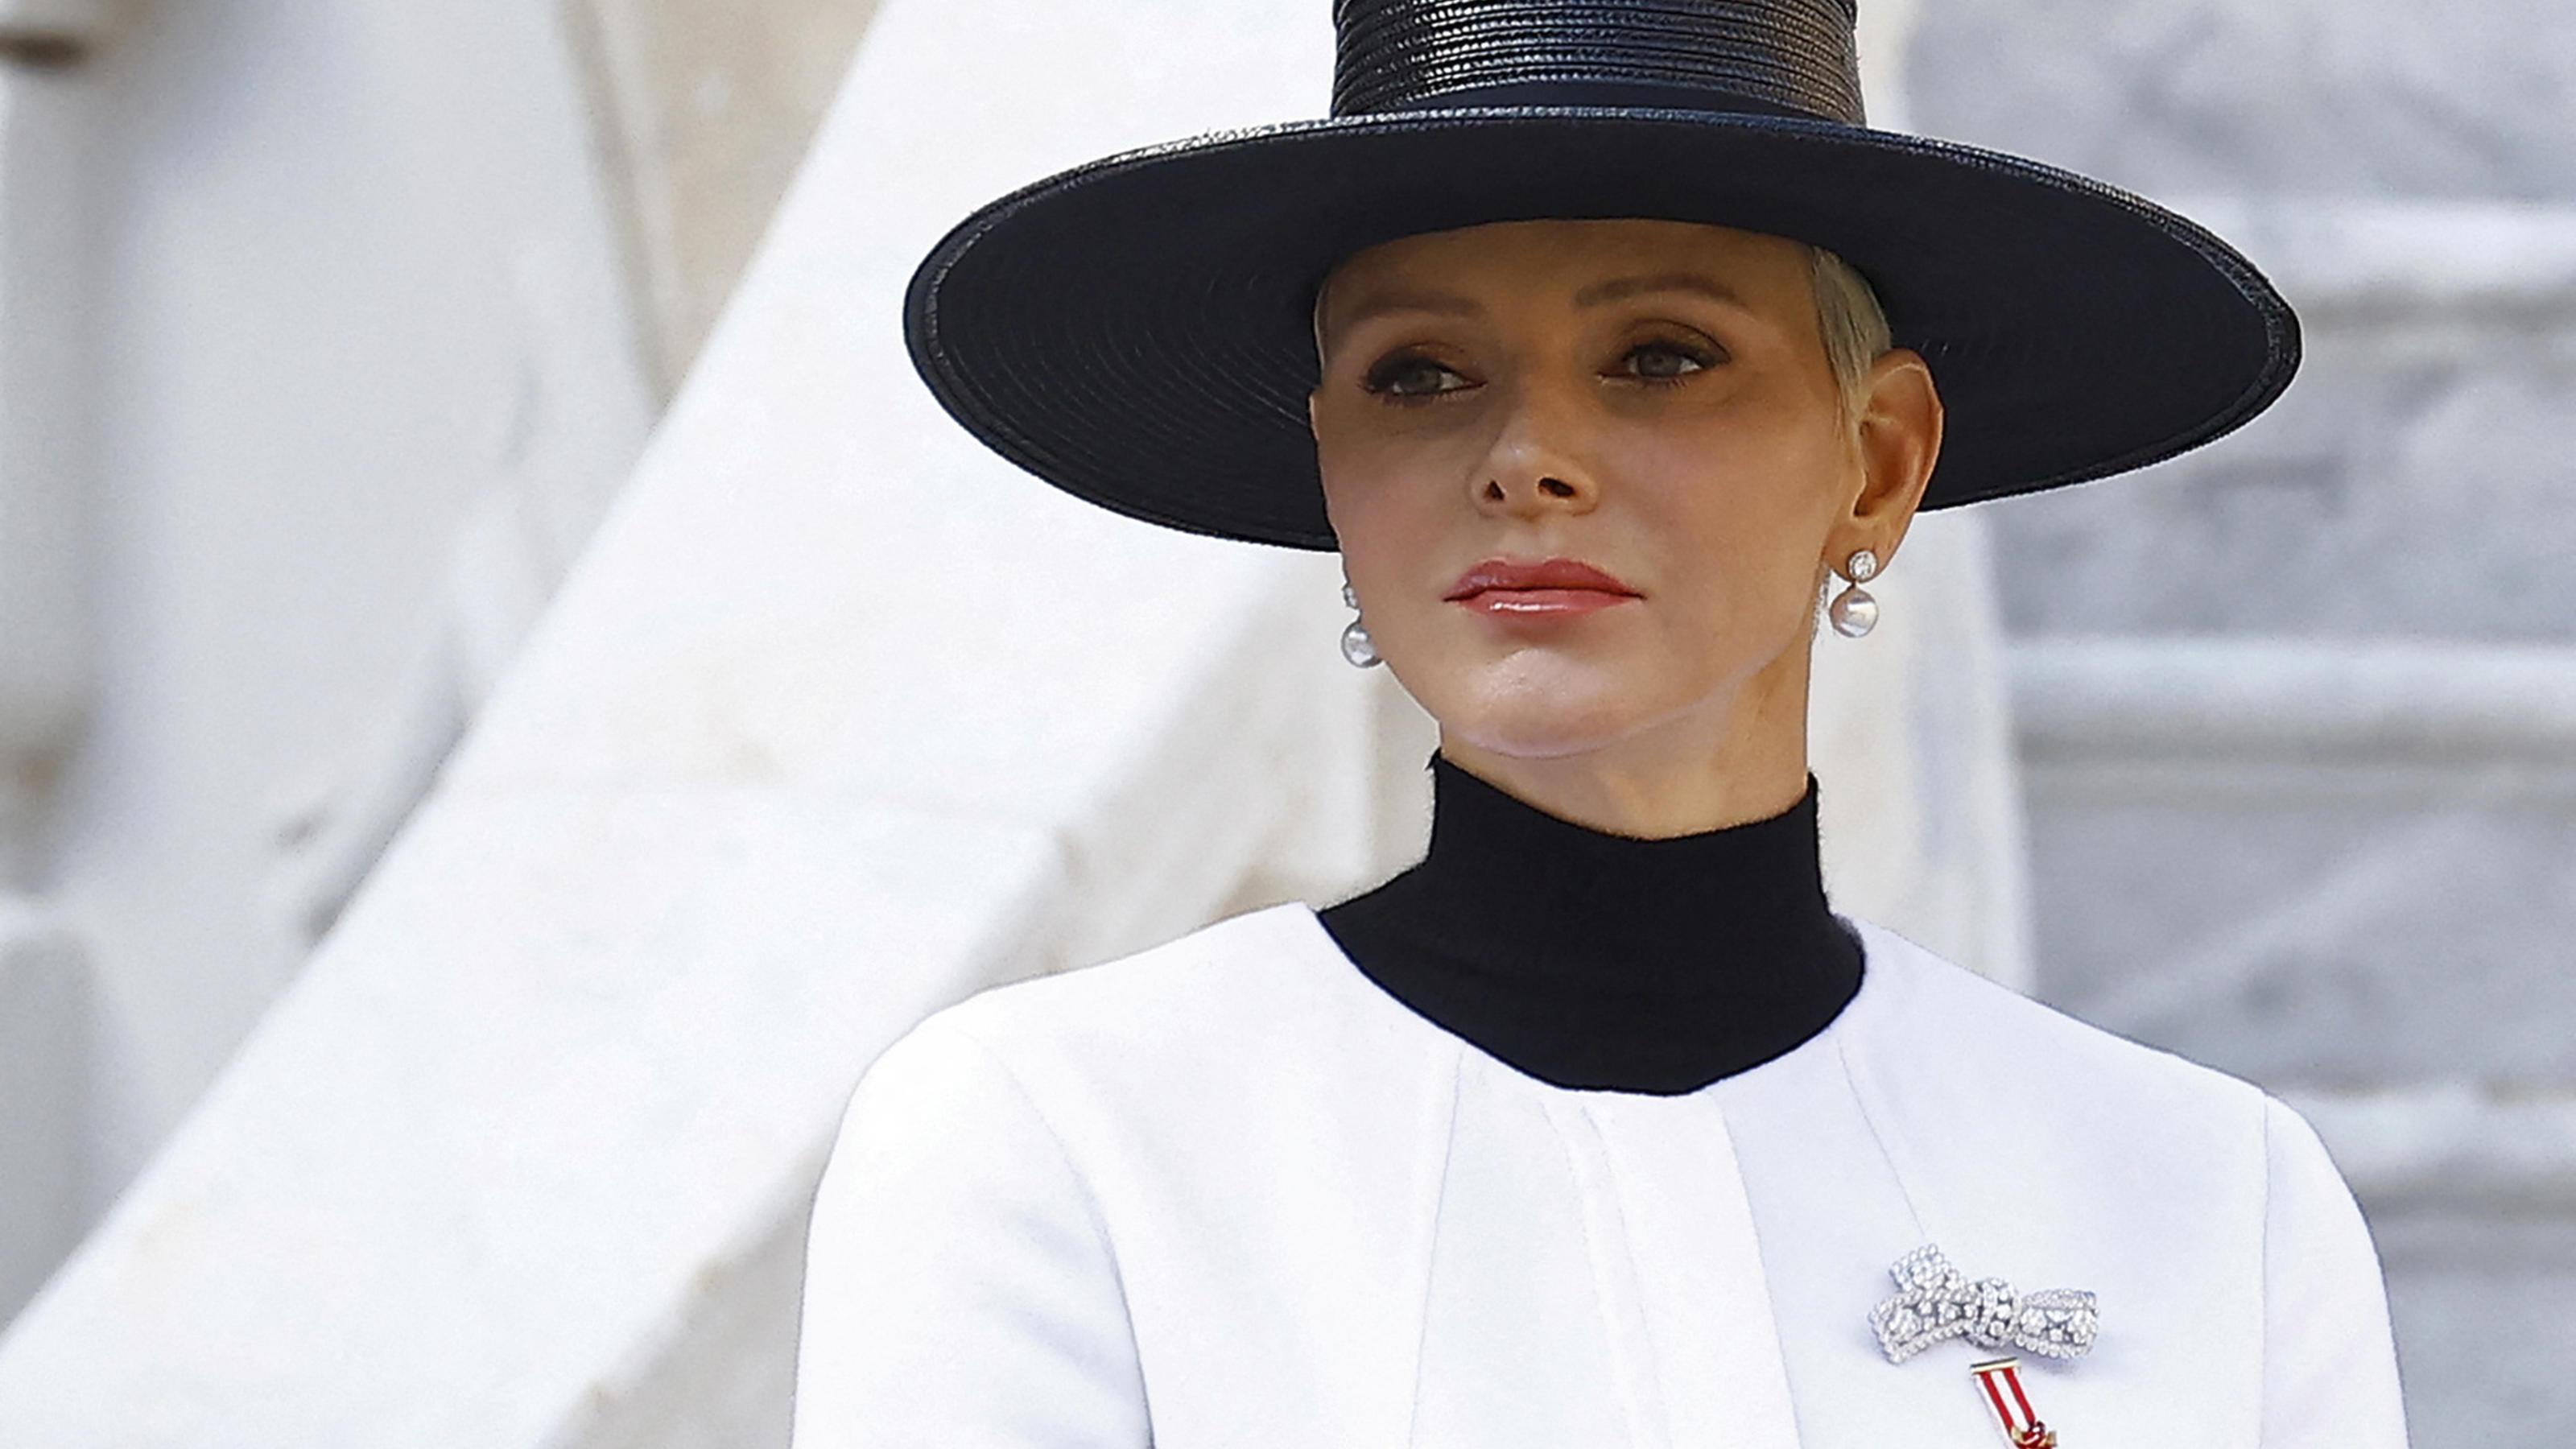 Charlène von Monaco trägt einen schwarzen Hut und ein weißes Kostüm. Sie steht vor einer Mamor-Treppe und schaut ernst zur Seite.